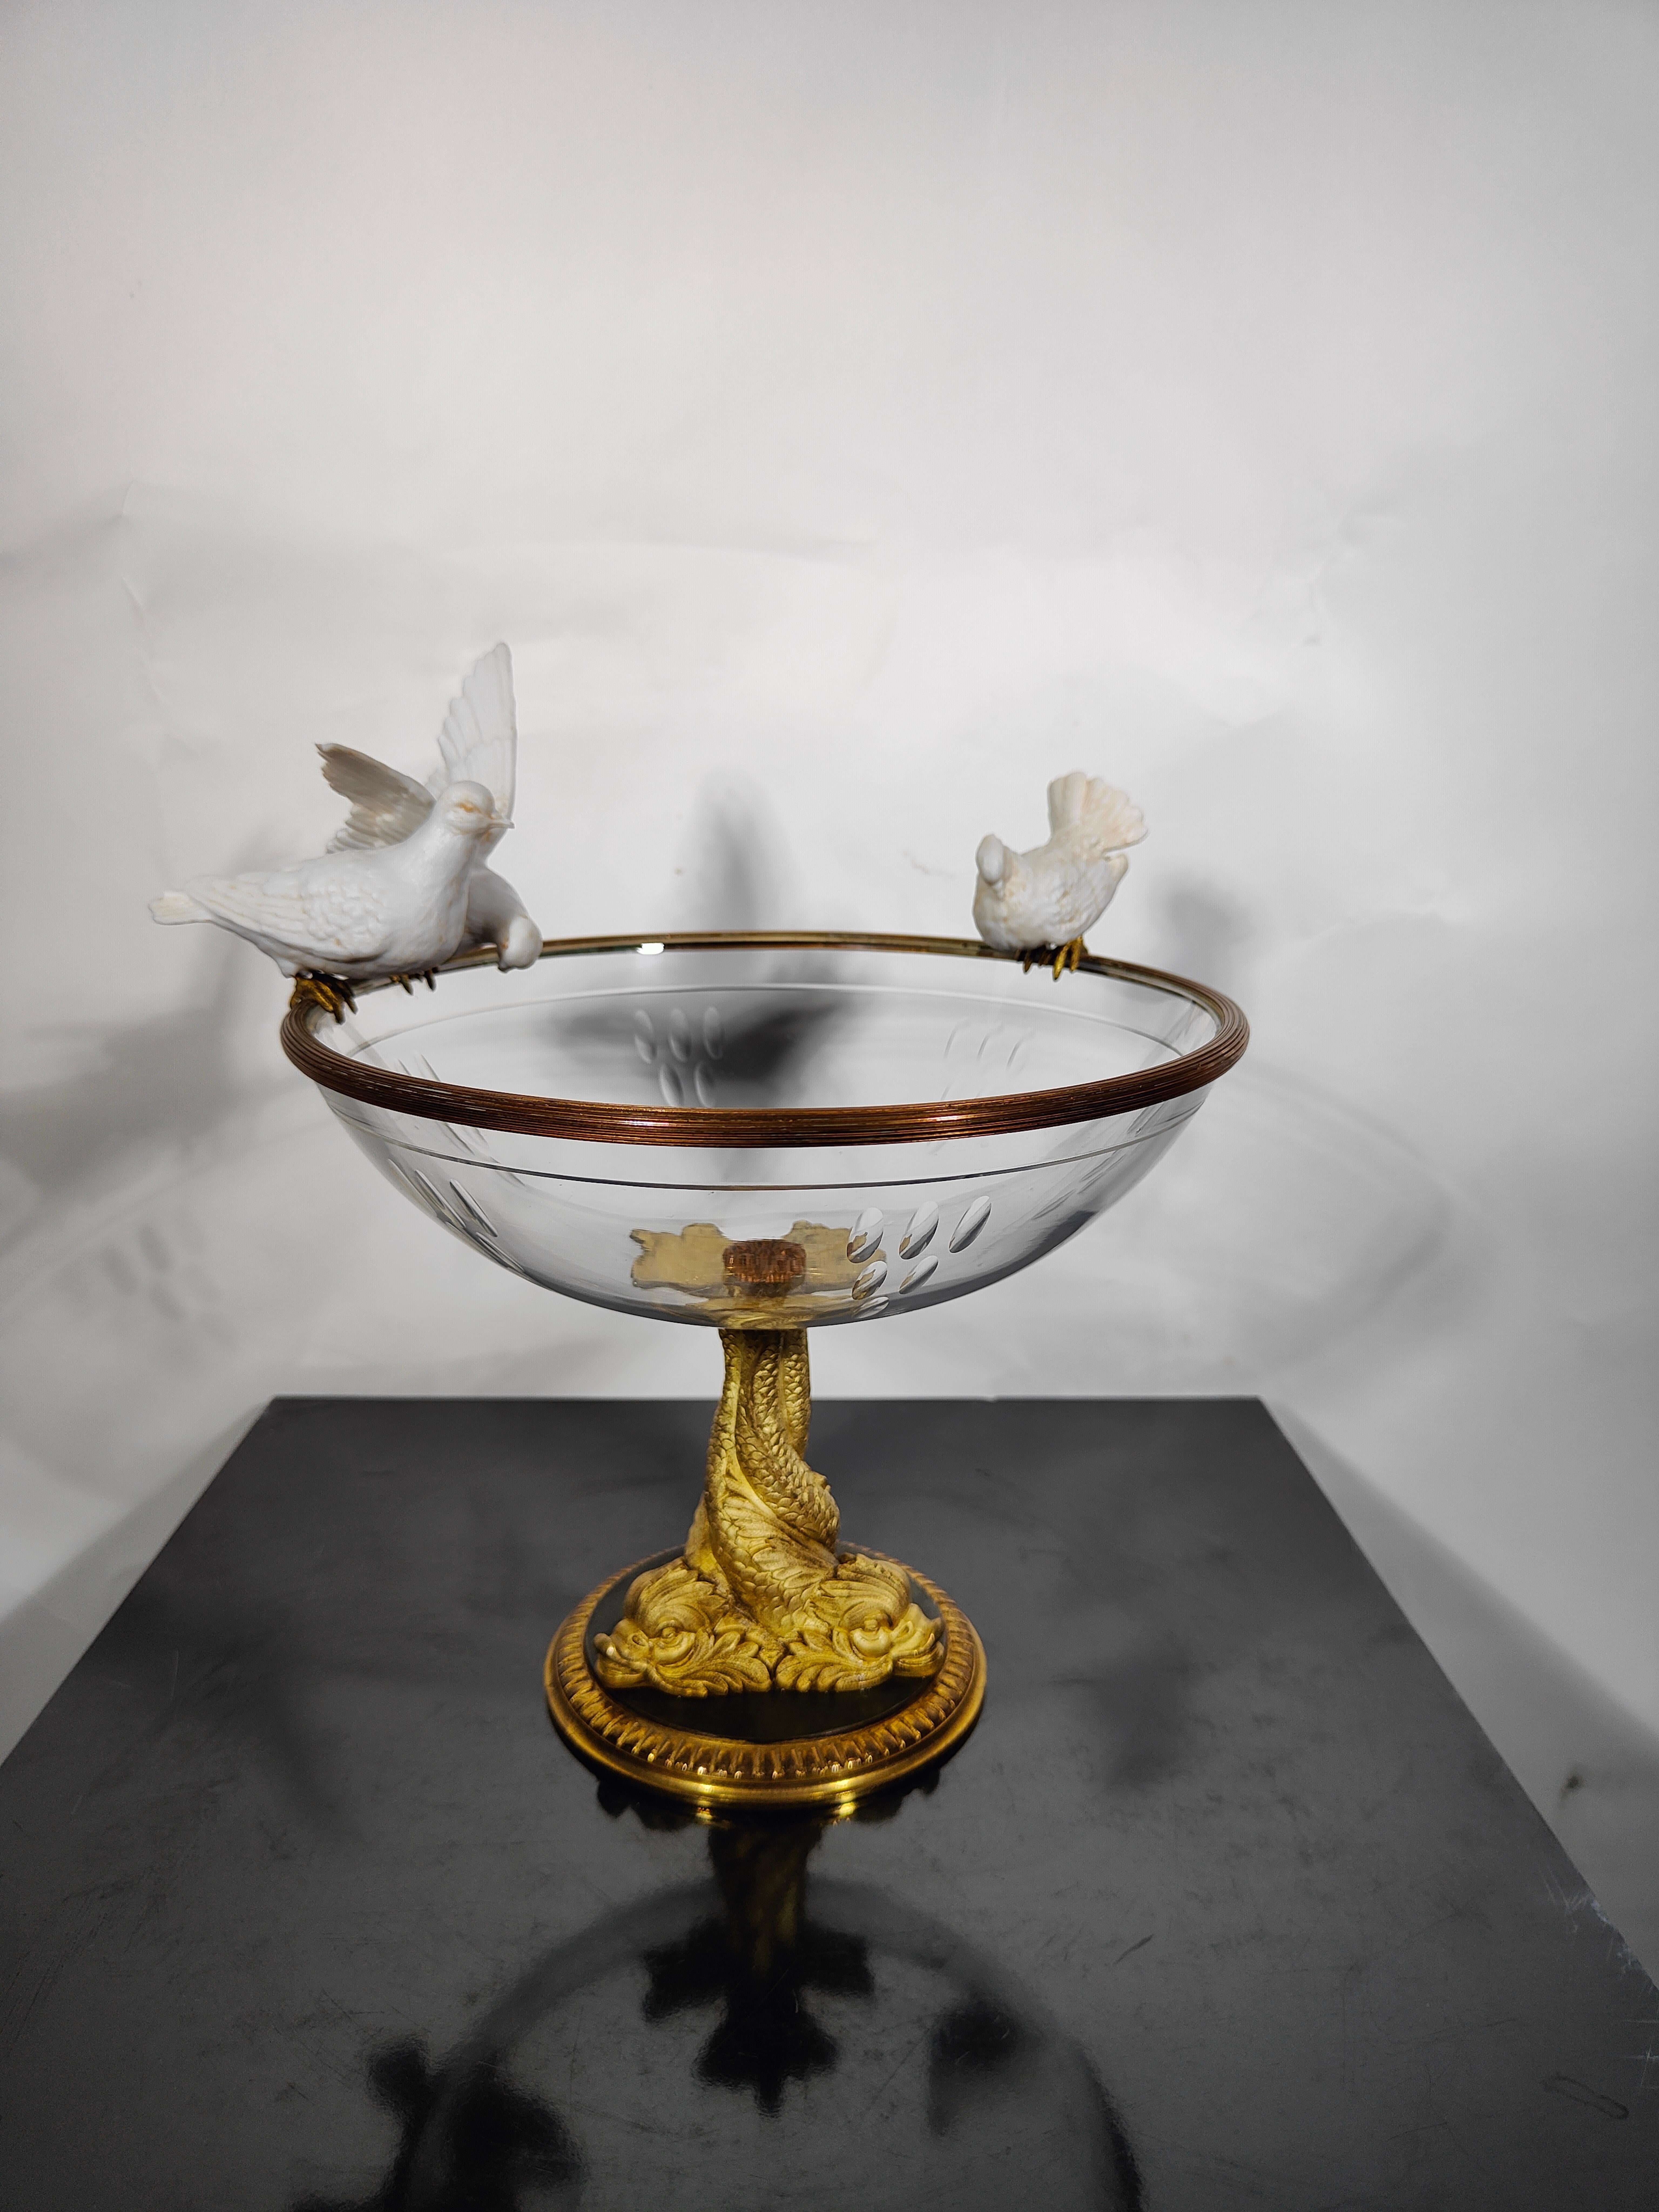 19. Jahrhundert Tafelaufsatz aus Kristall und Porzellan.
19. Jahrhundert Tafelaufsatz aus Kristall und Porzellan Eleganter Tafelaufsatz, der eine gemeißelte Glasquelle simuliert, auf der 3 Porzellanvögel ruhen, die von 3 ineinandergreifenden